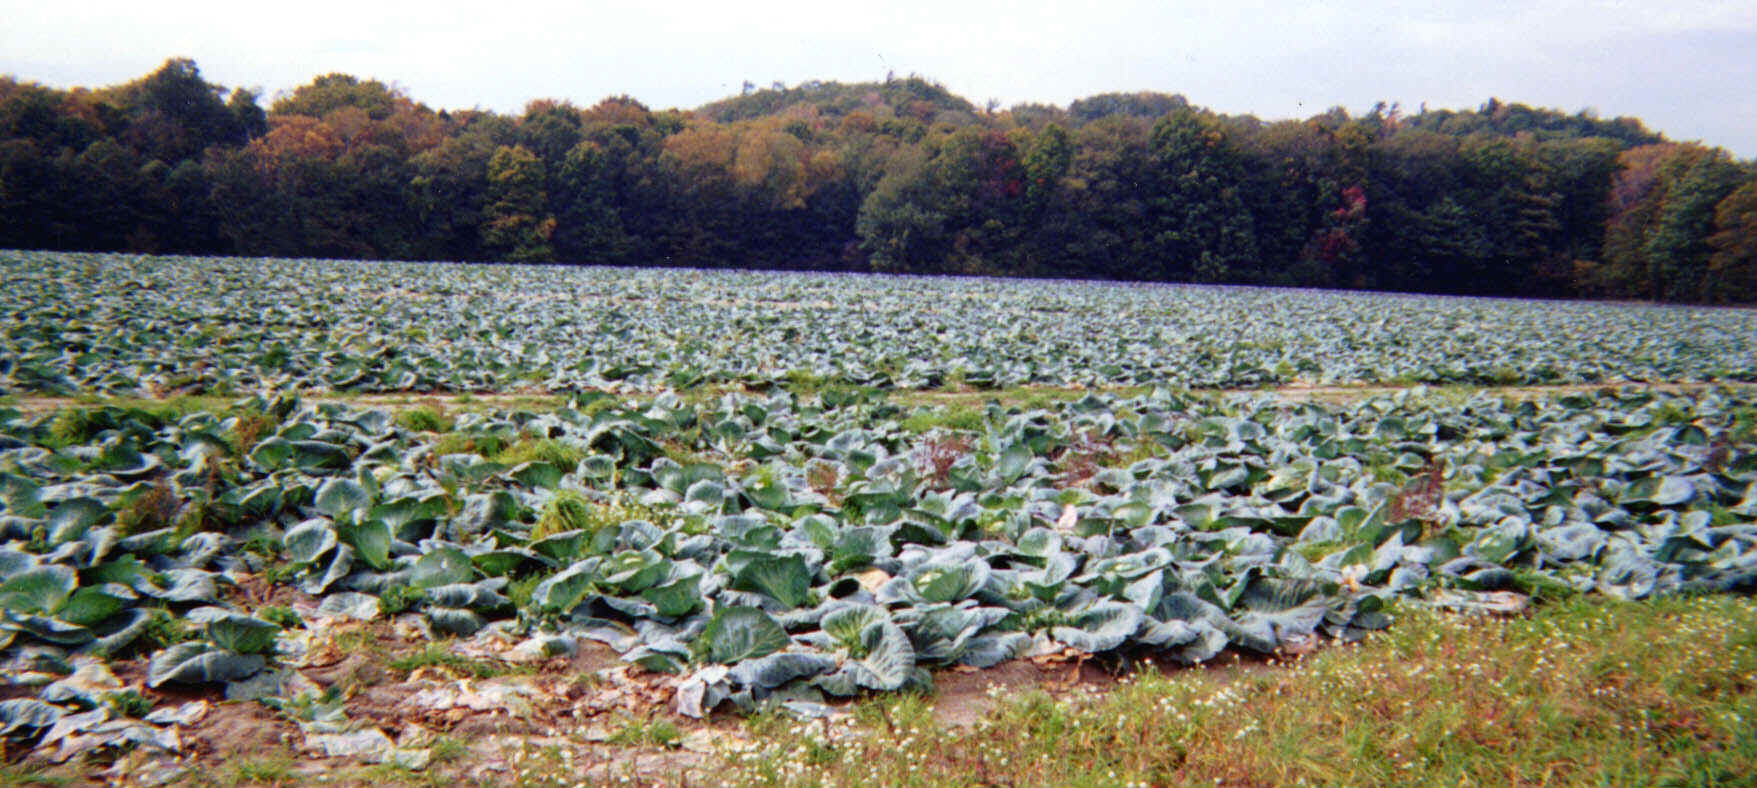 harvestedcabbage.jpeg (350427 bytes)